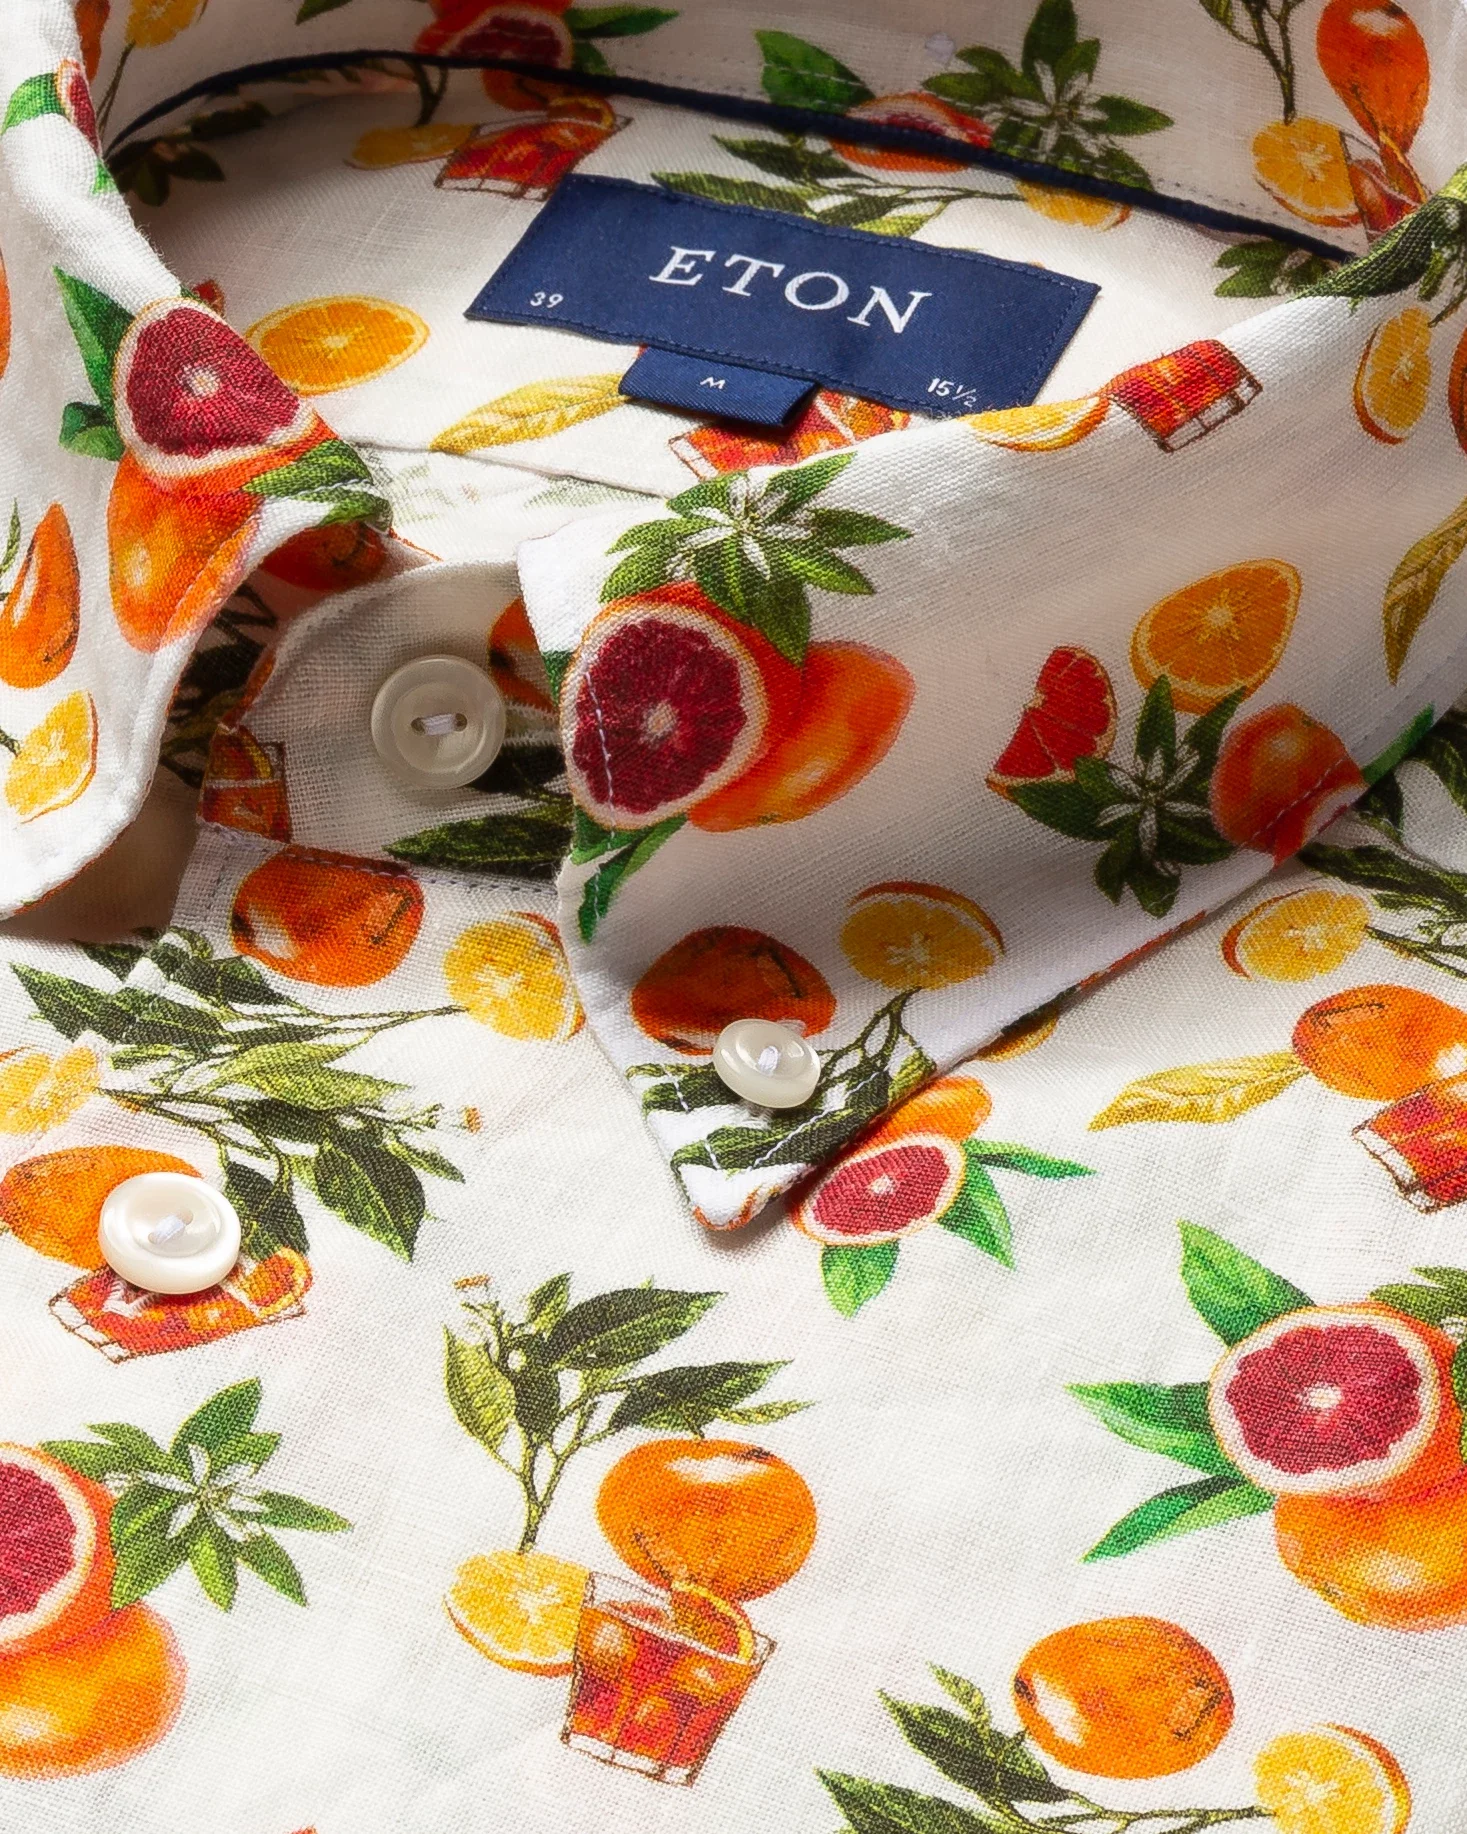 Eton - orange juice print linen shirt